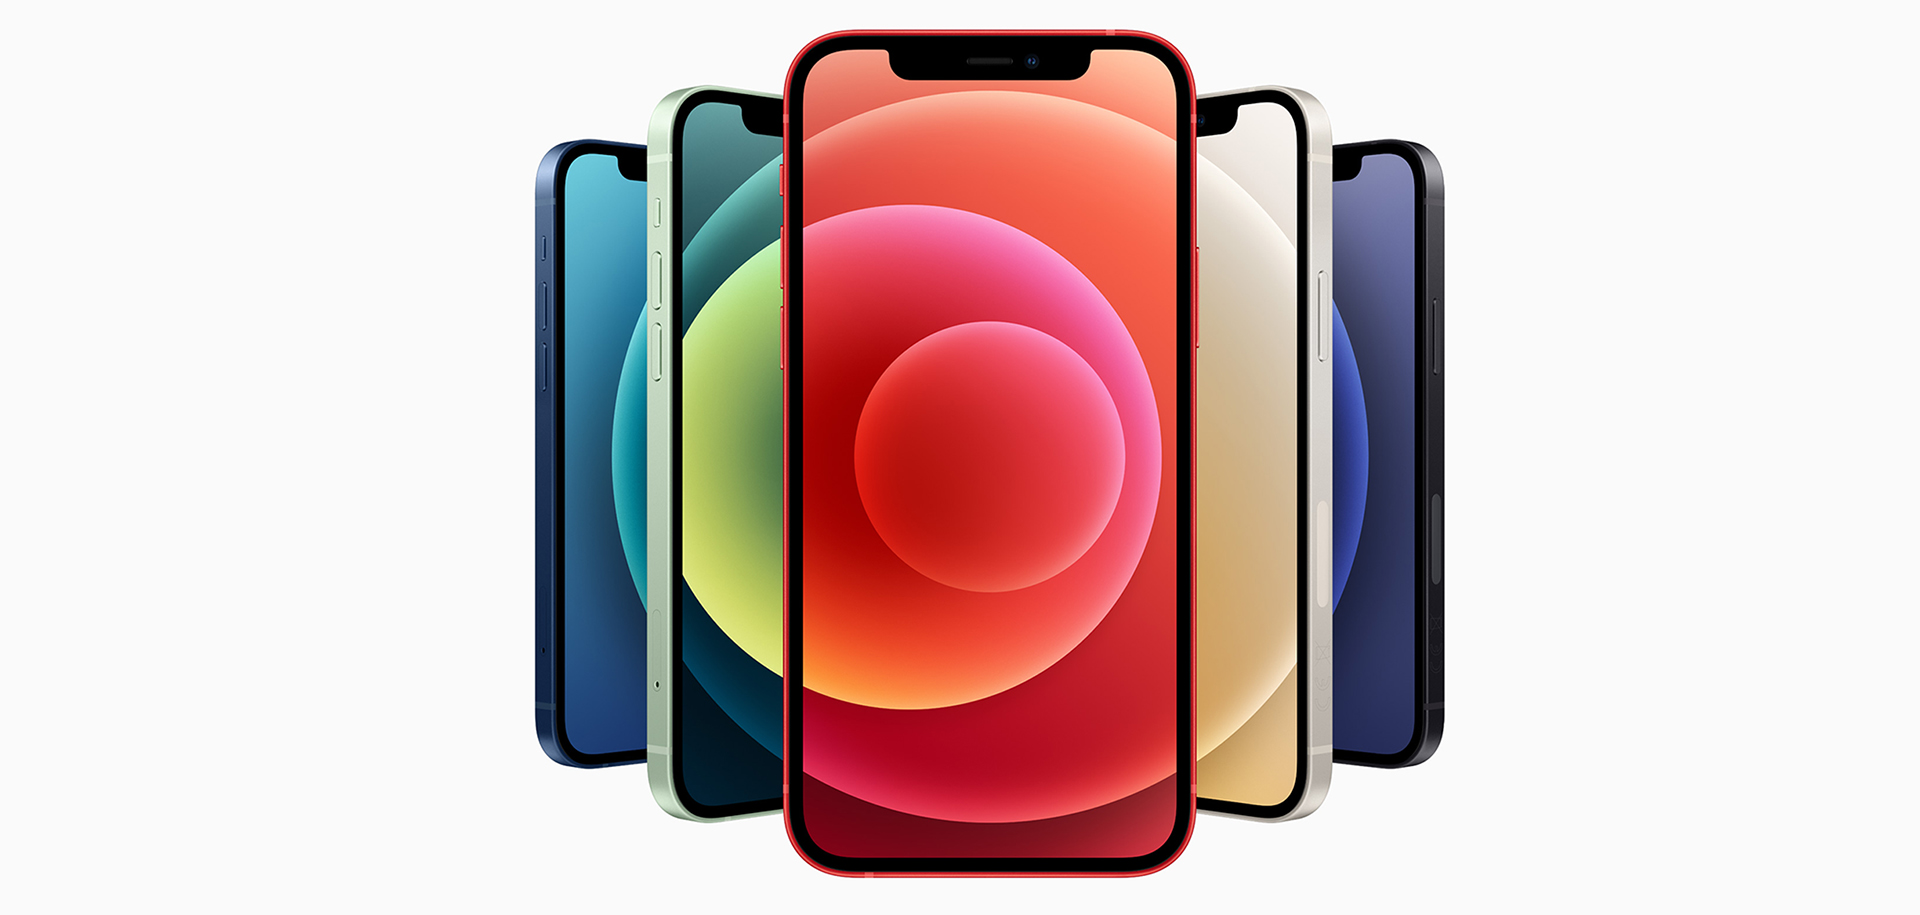 iPhone 12, MagSafe, HomePod Mini e mais: tudo o que a Apple anunciou em outubro de 2020